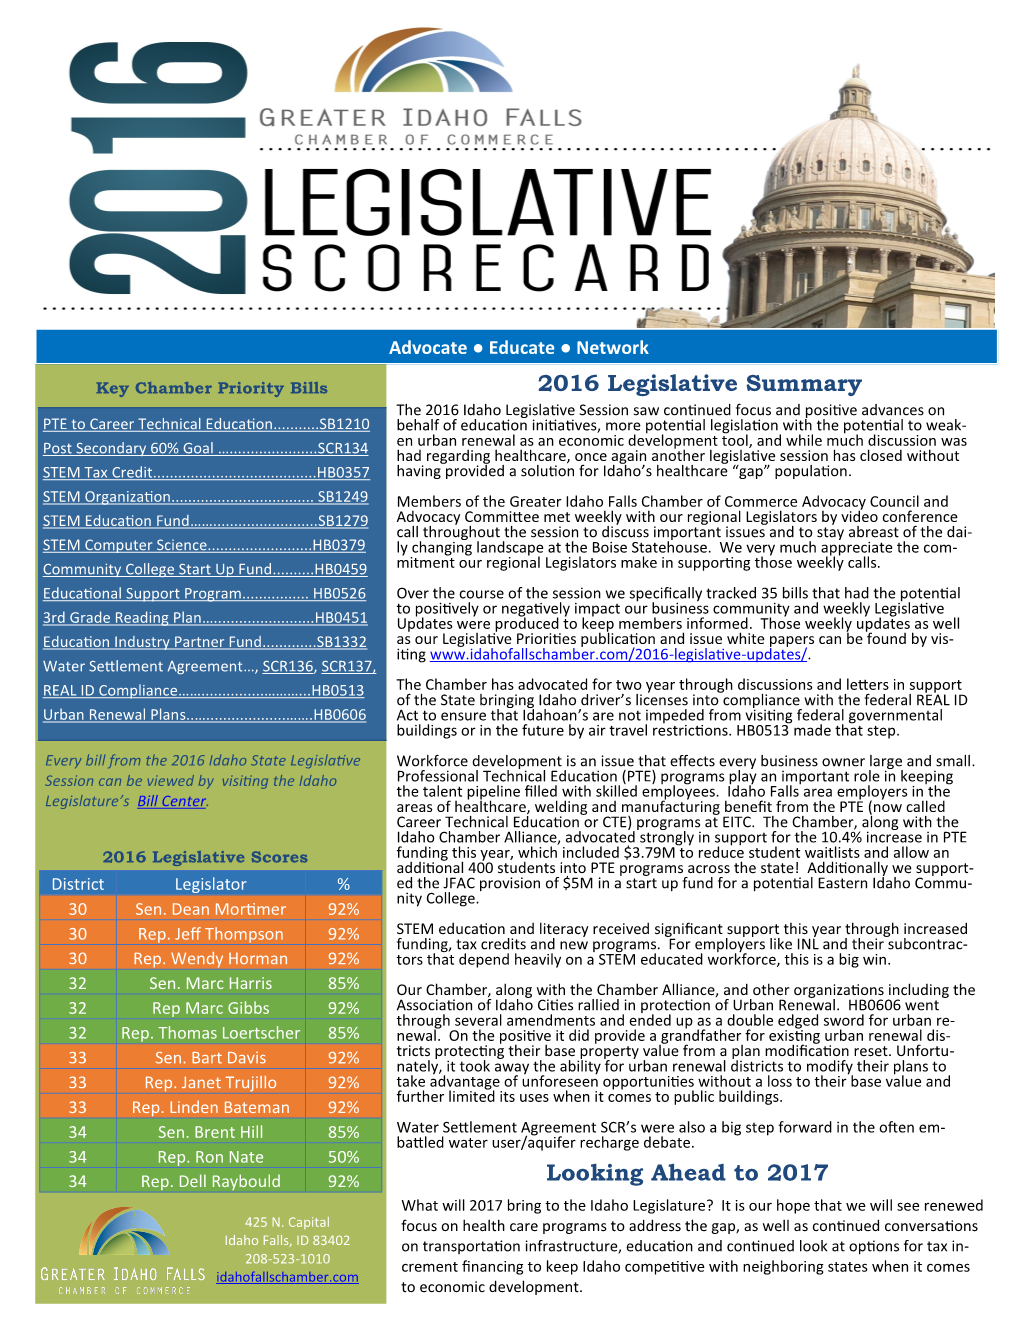 2016 Legislative Summary Looking Ahead to 2017